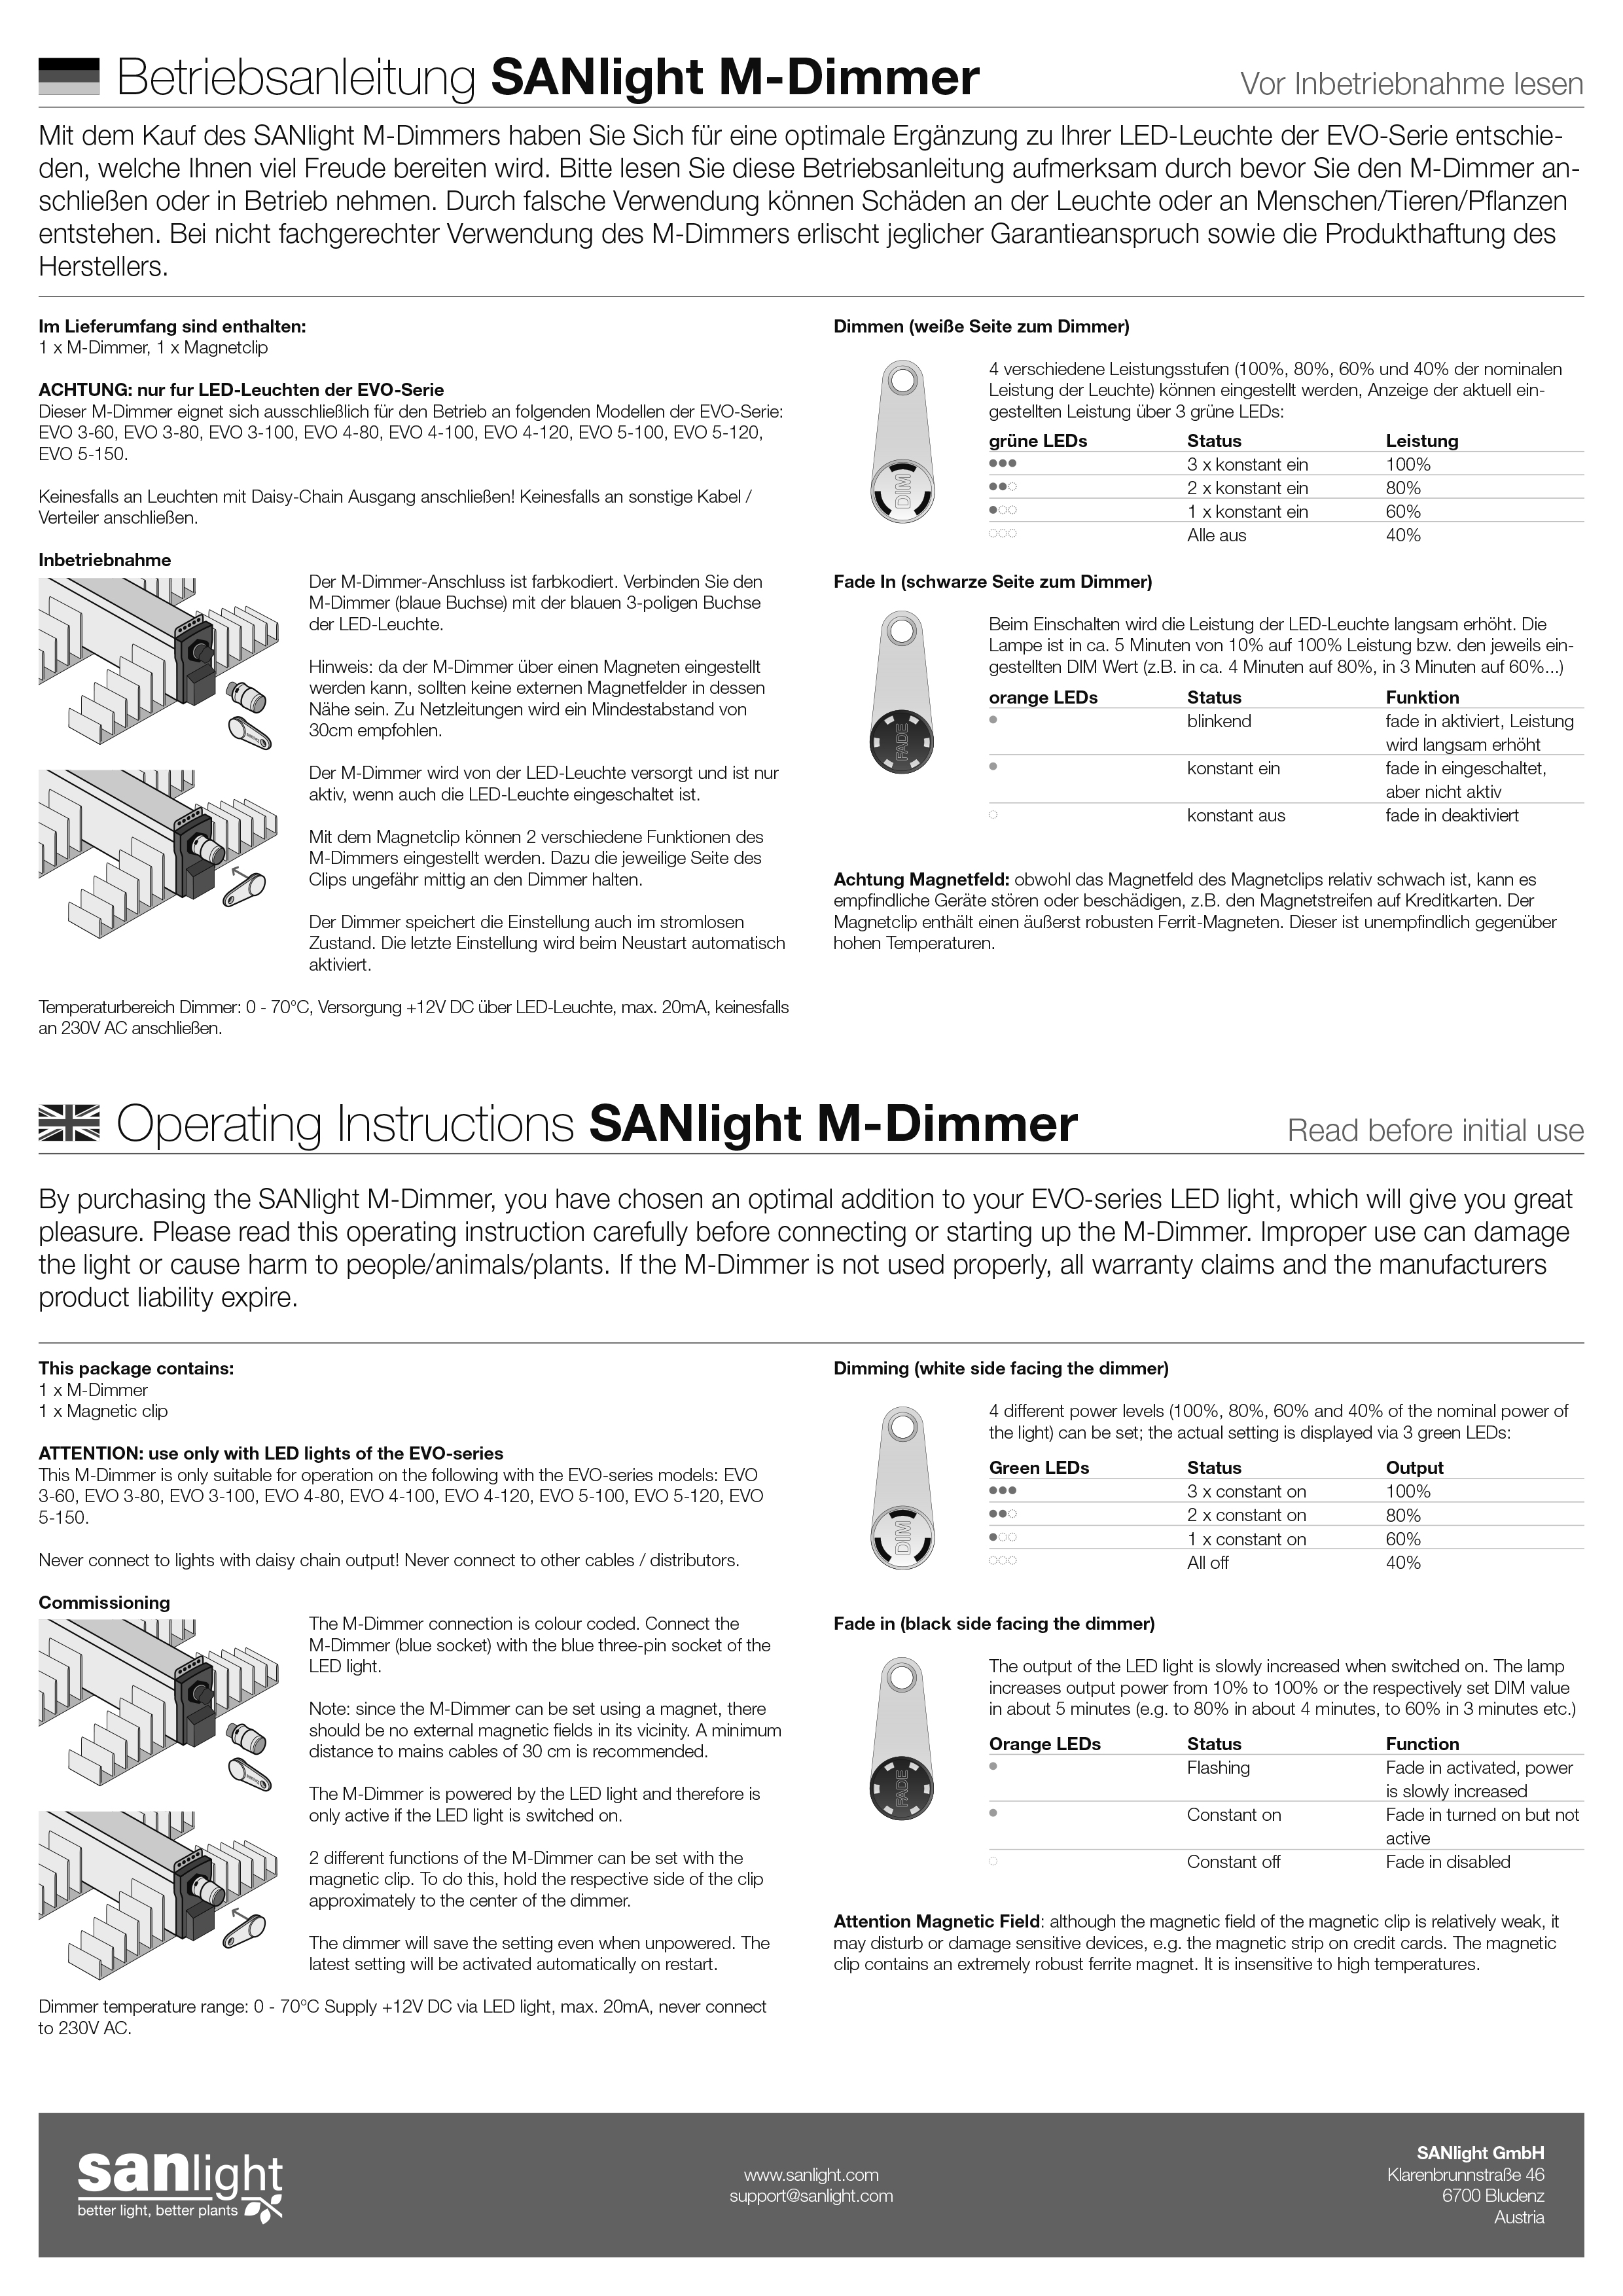 SANLight M-Dimmer EVO-Serie